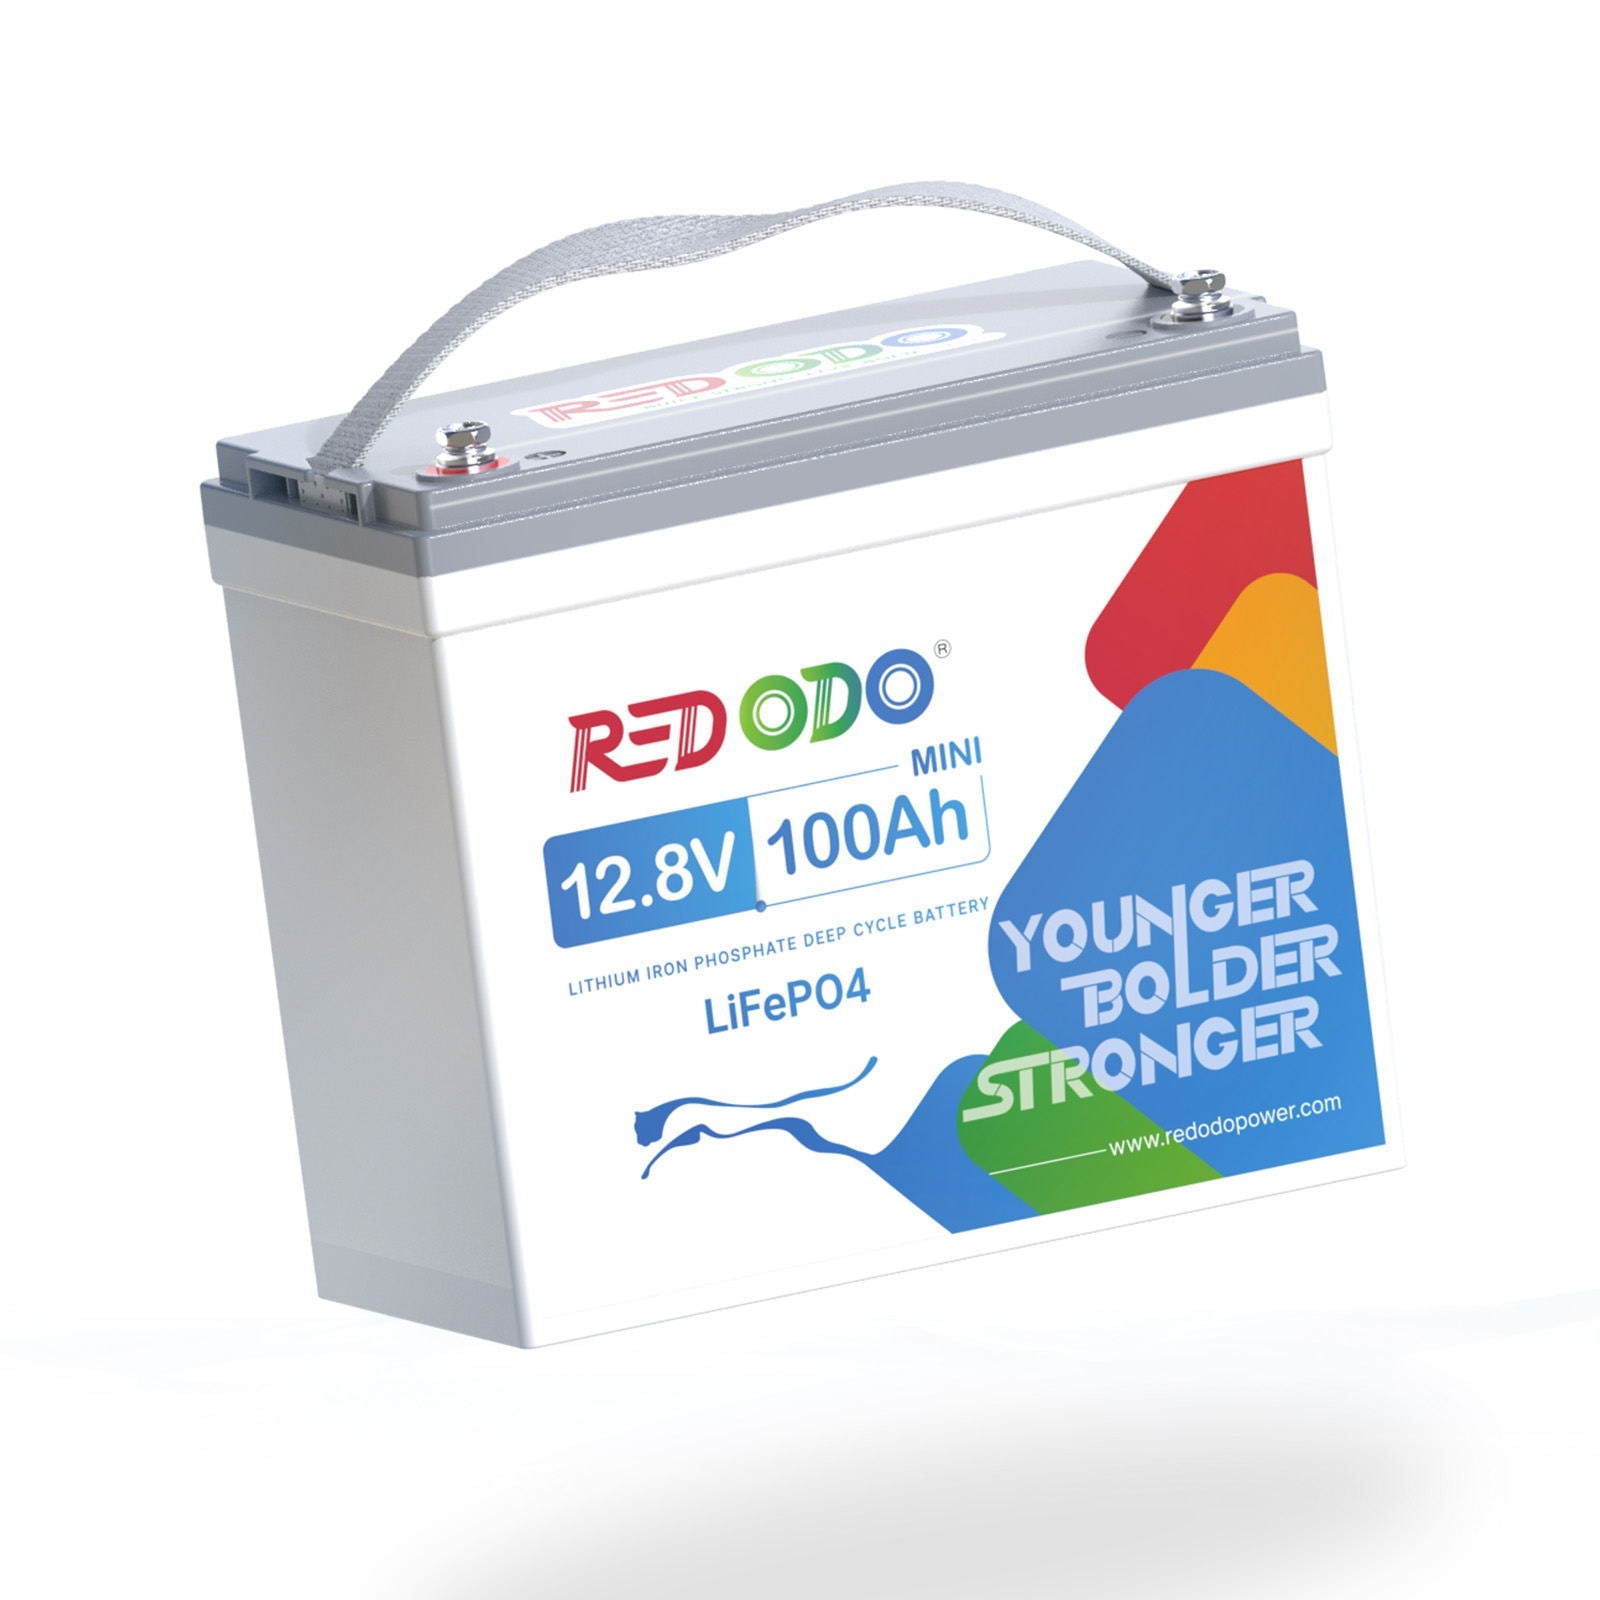 Redodo Power-Les batteries les moins chères pour les maisons